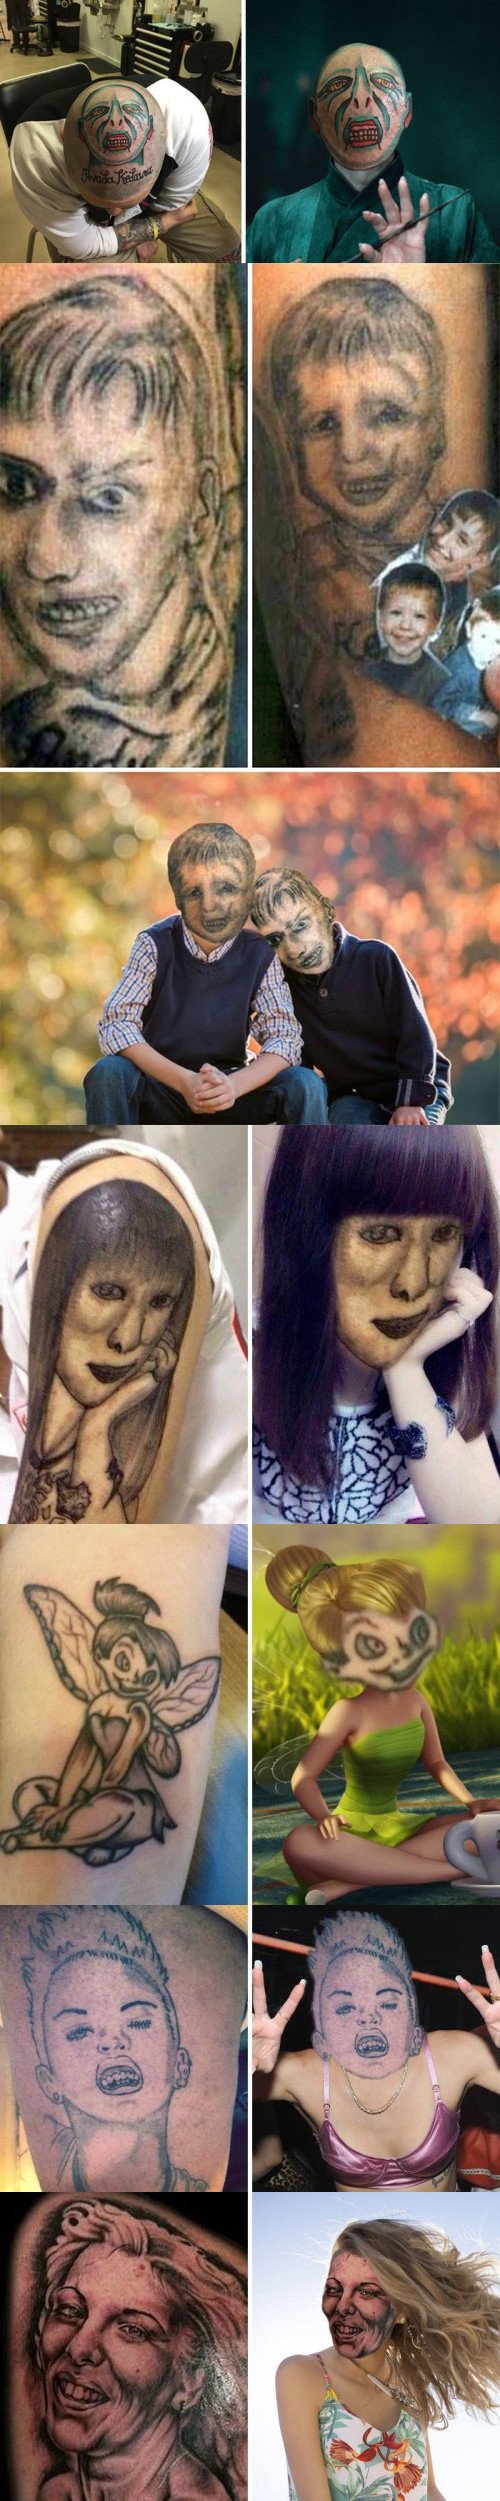 Meme_otros - Cuando te tatúas el rostro de una persona y el resultado no es el que esperabas